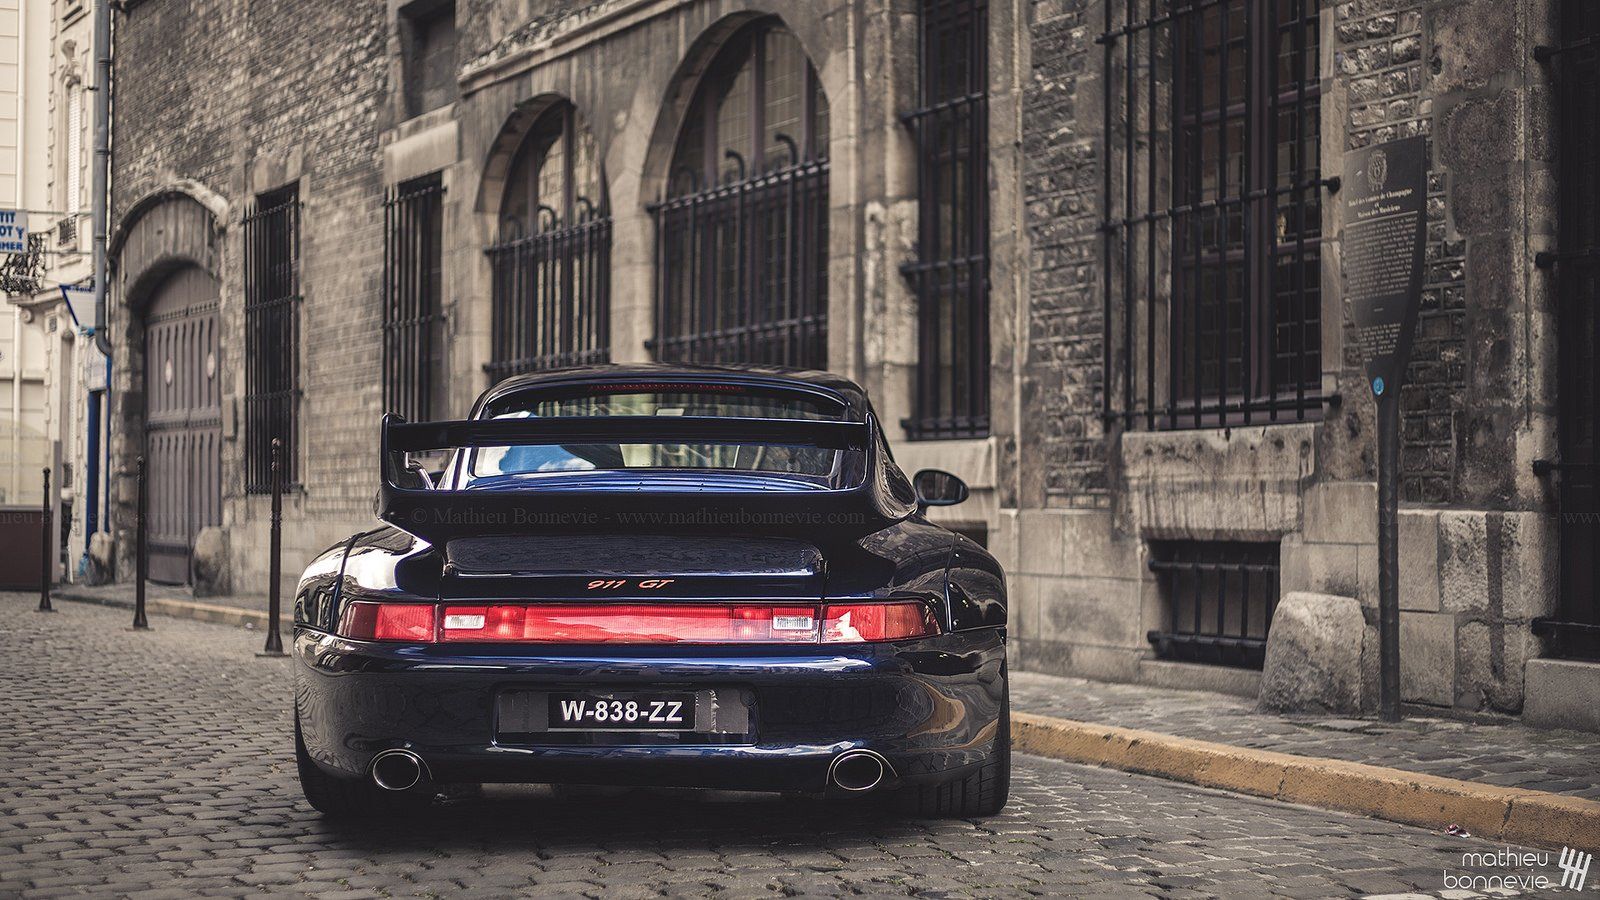 Porsche 993 Wallpapers